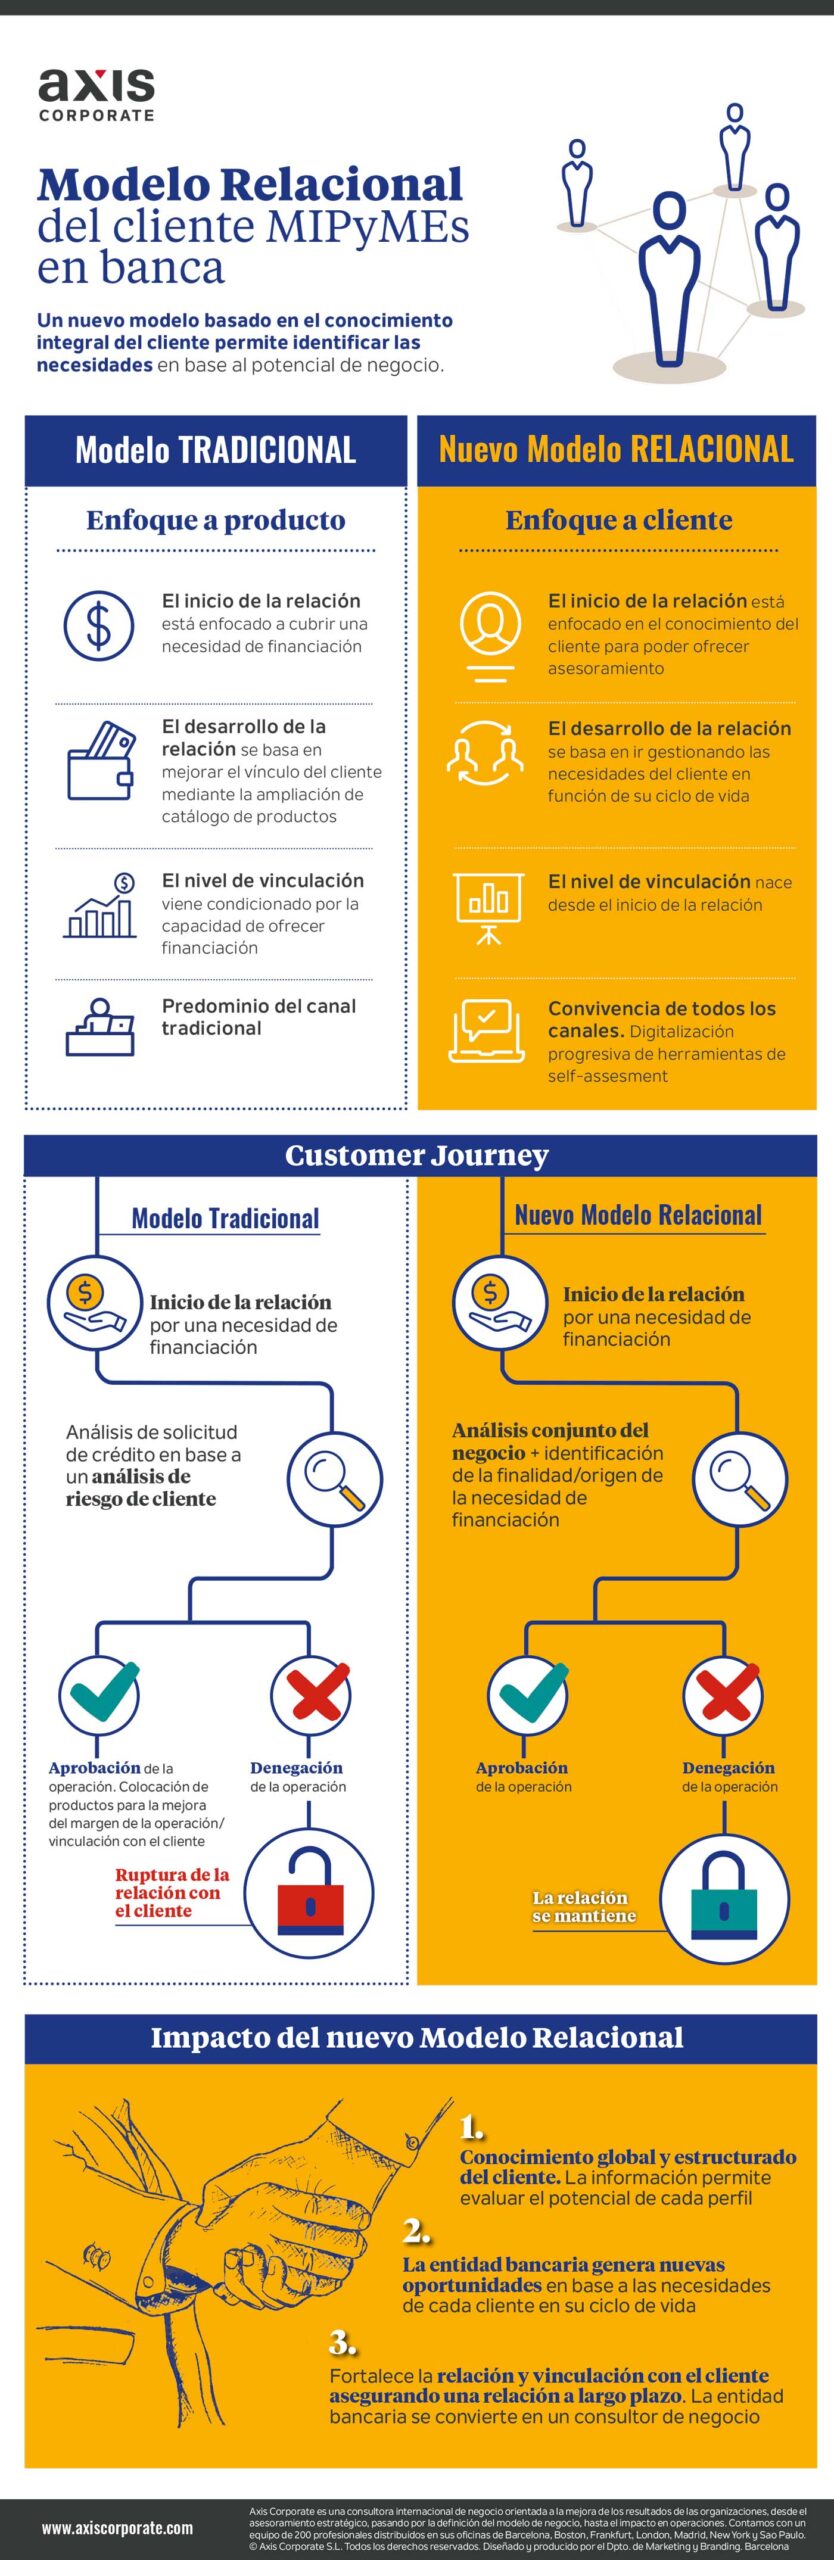 Modelo relacional de cliente MIPyMES en banca | Axis Corporate